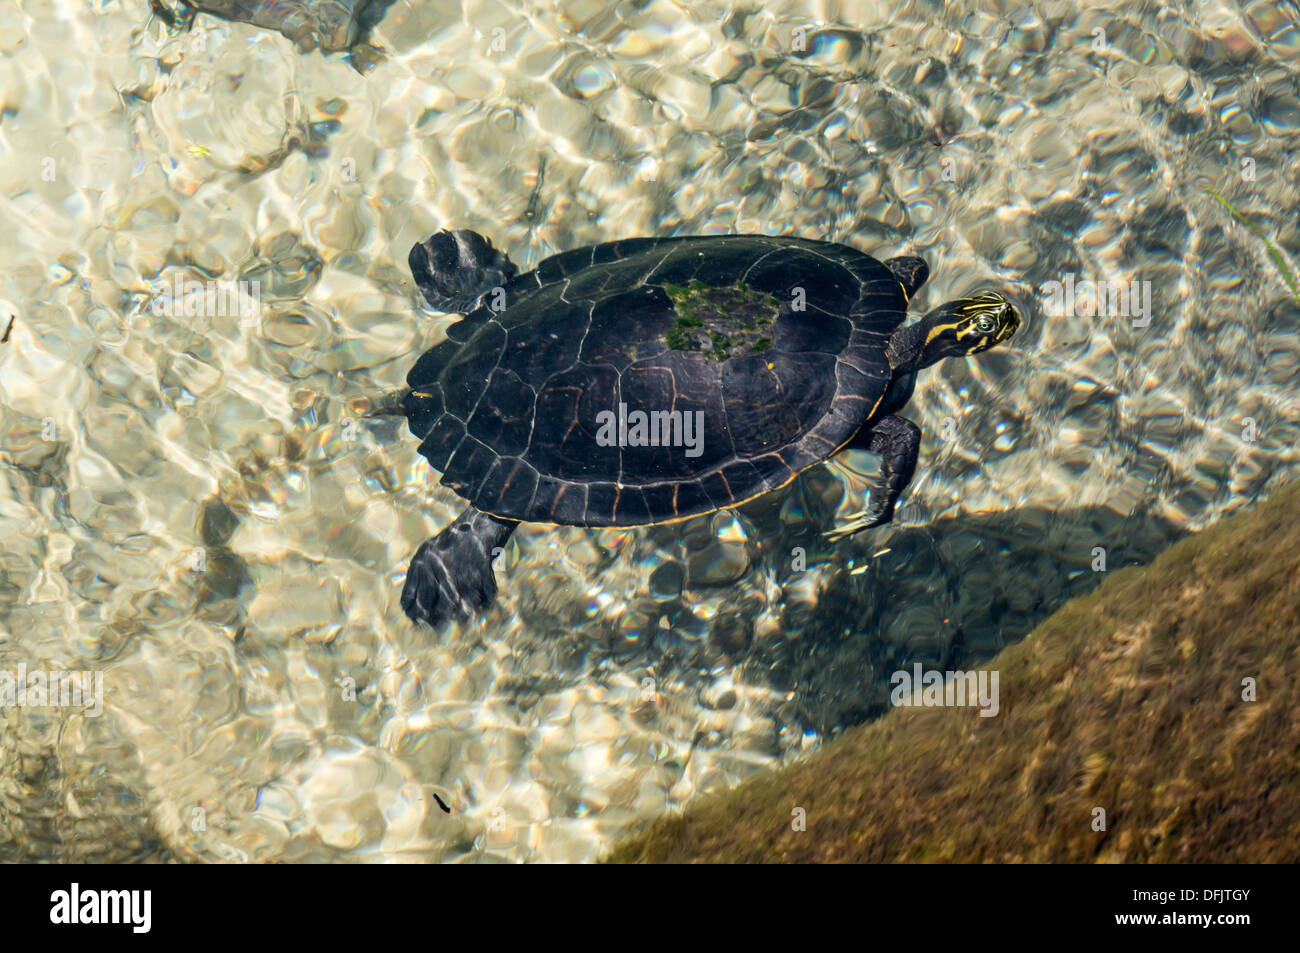 Llanura Costera cooter (Pseudemys concinna floridana) o Florida cooter, especies de grandes herbívoros de tortugas de agua dulce de la natación. Foto de stock